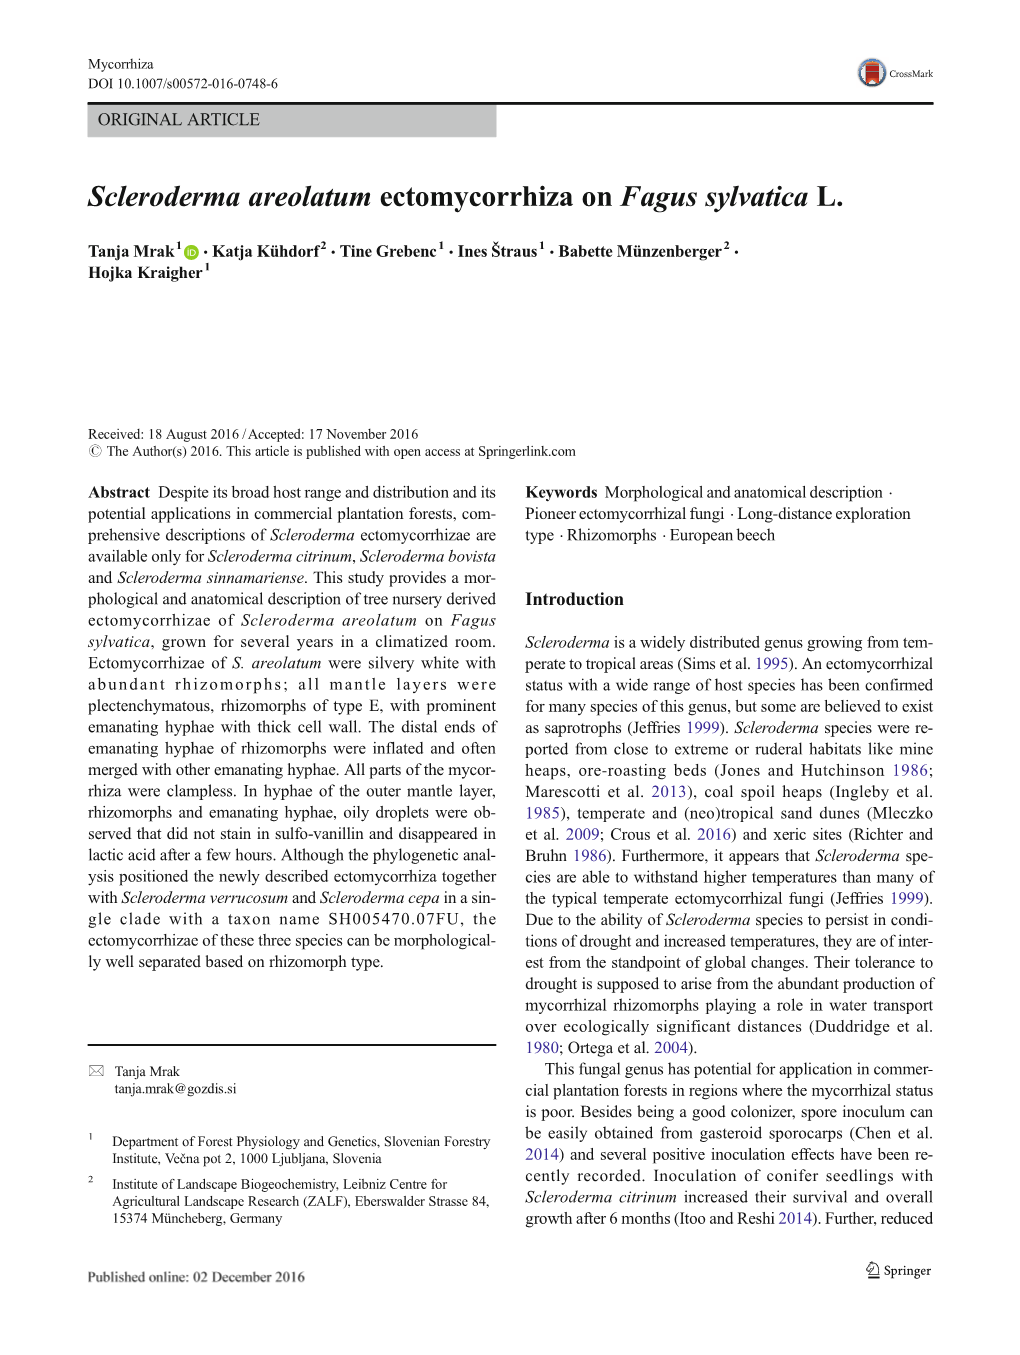 Scleroderma Areolatum Ectomycorrhiza on Fagus Sylvatica L